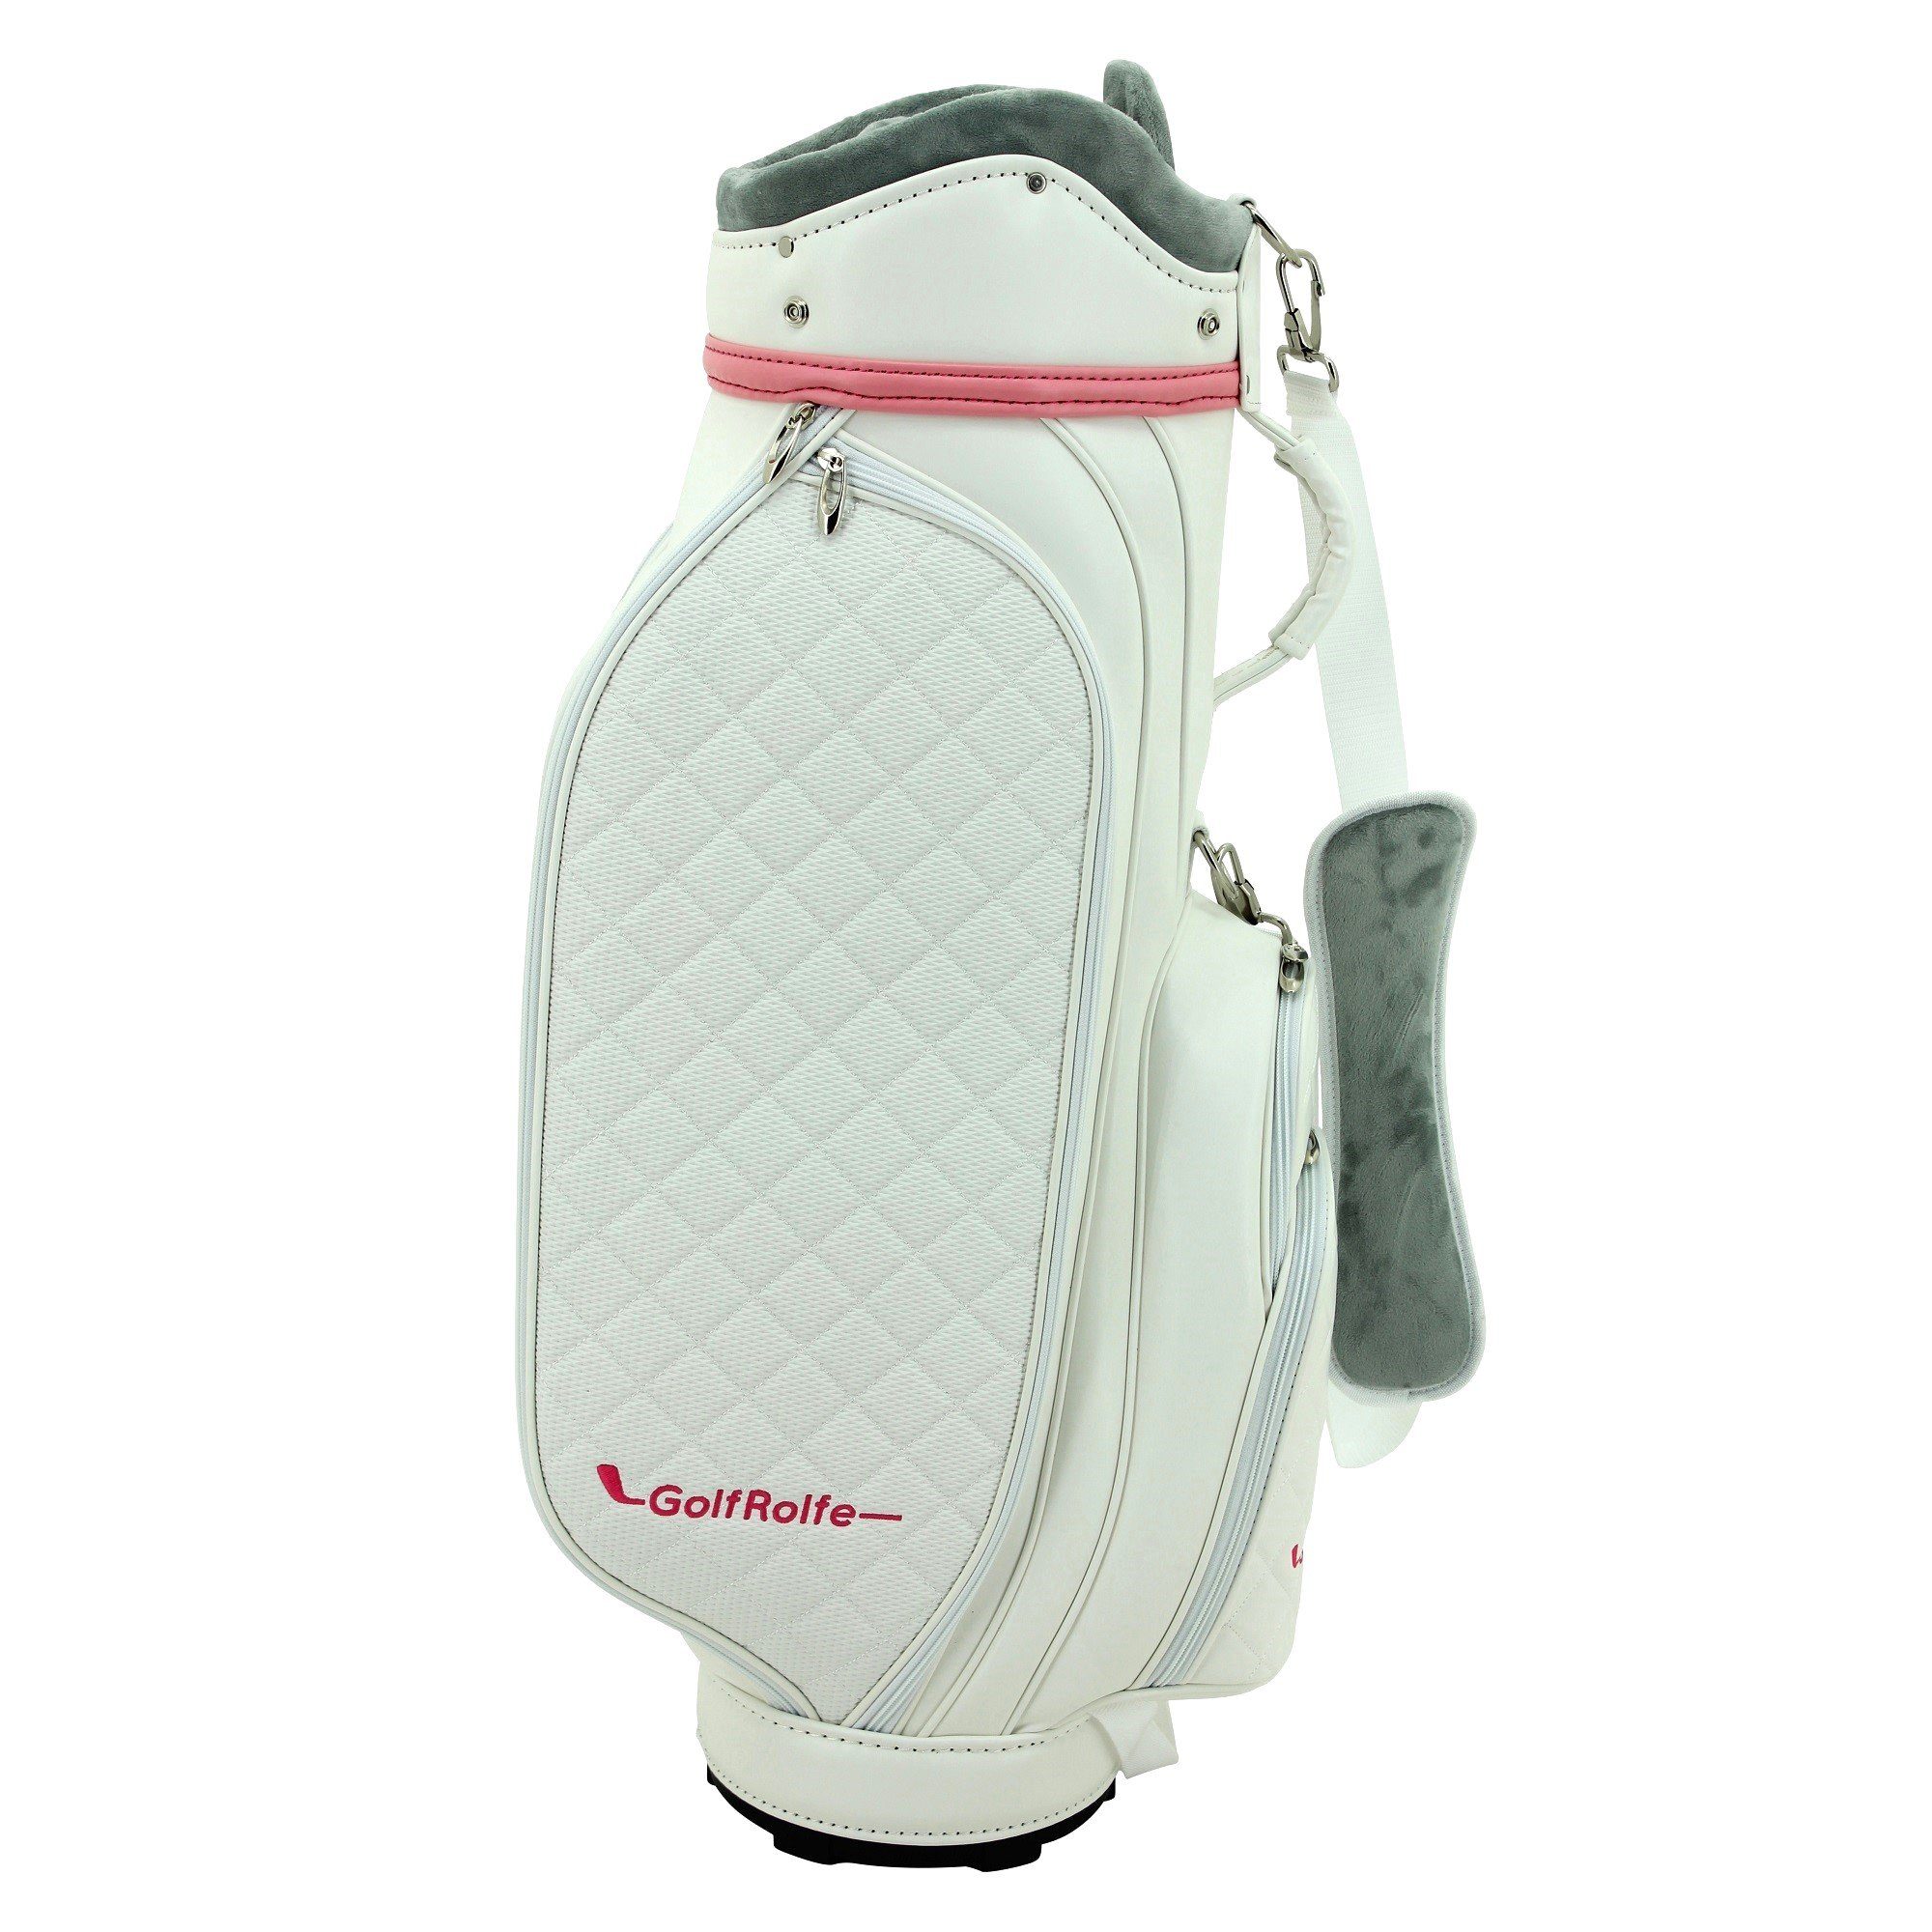 weiß Golftasche - GolfRolfe GolfRolfe 14279 Golfballtasche Golfbag Caddybag Design